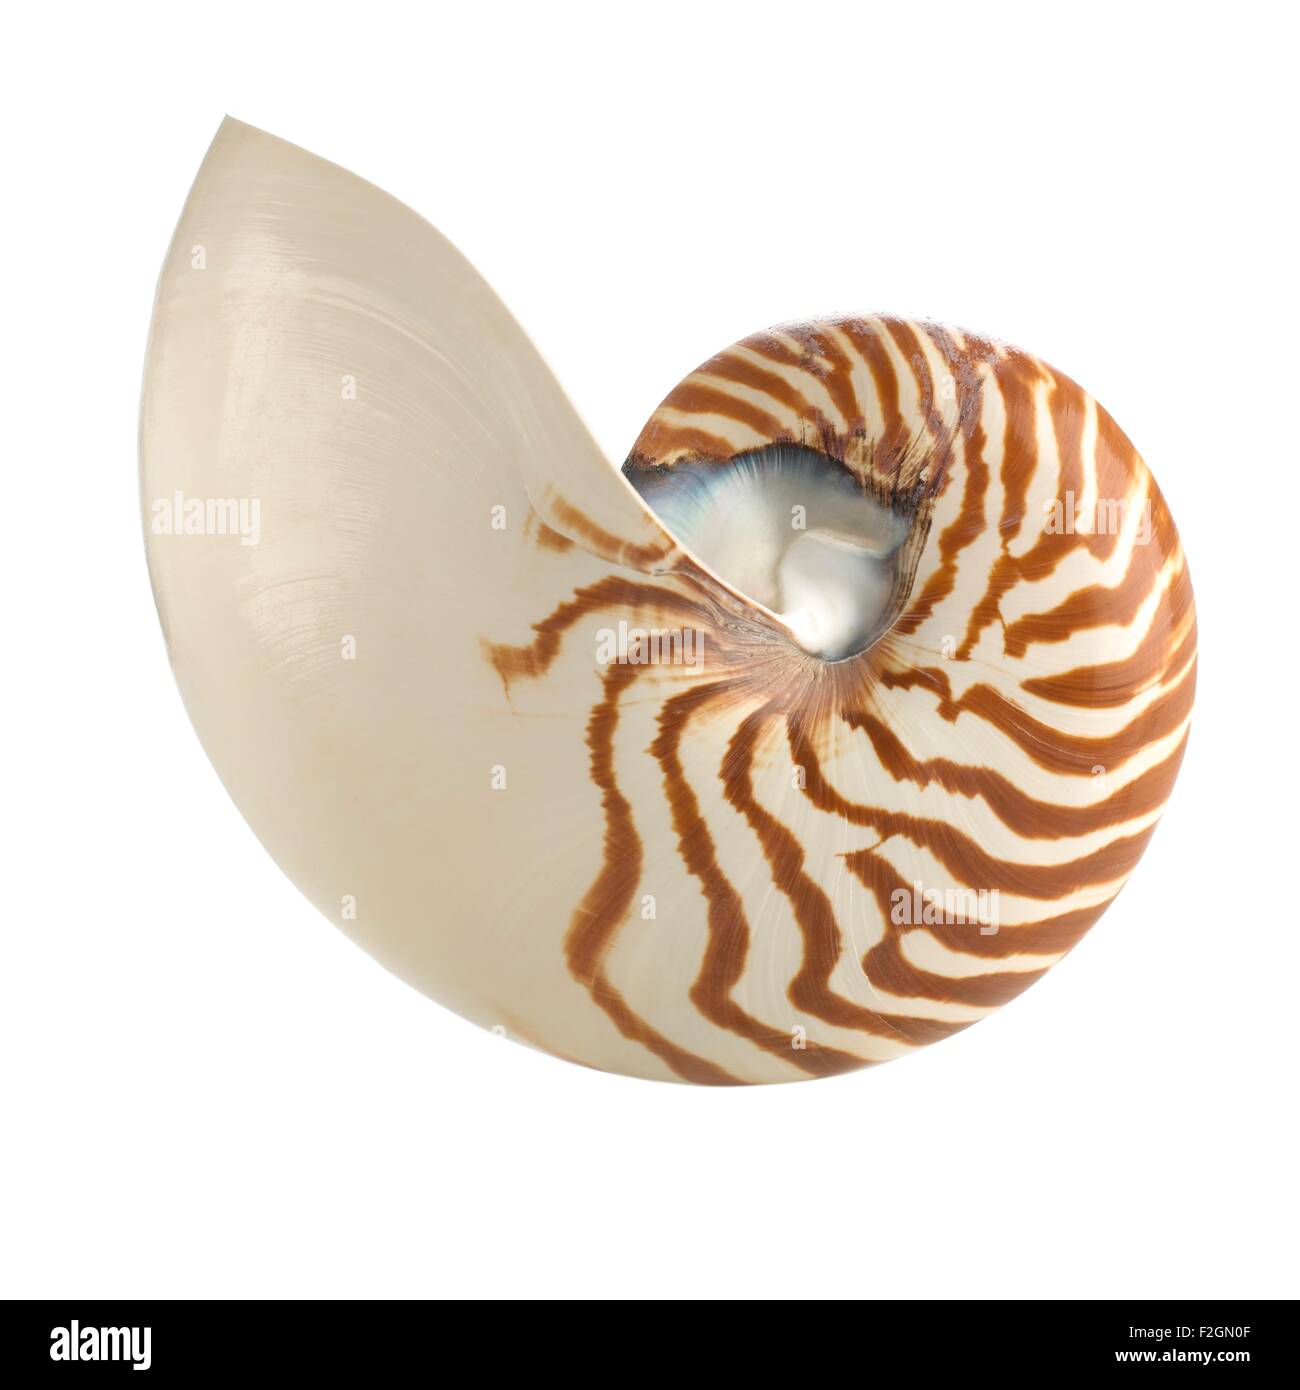 Chambered nautilus shell Stock Photo